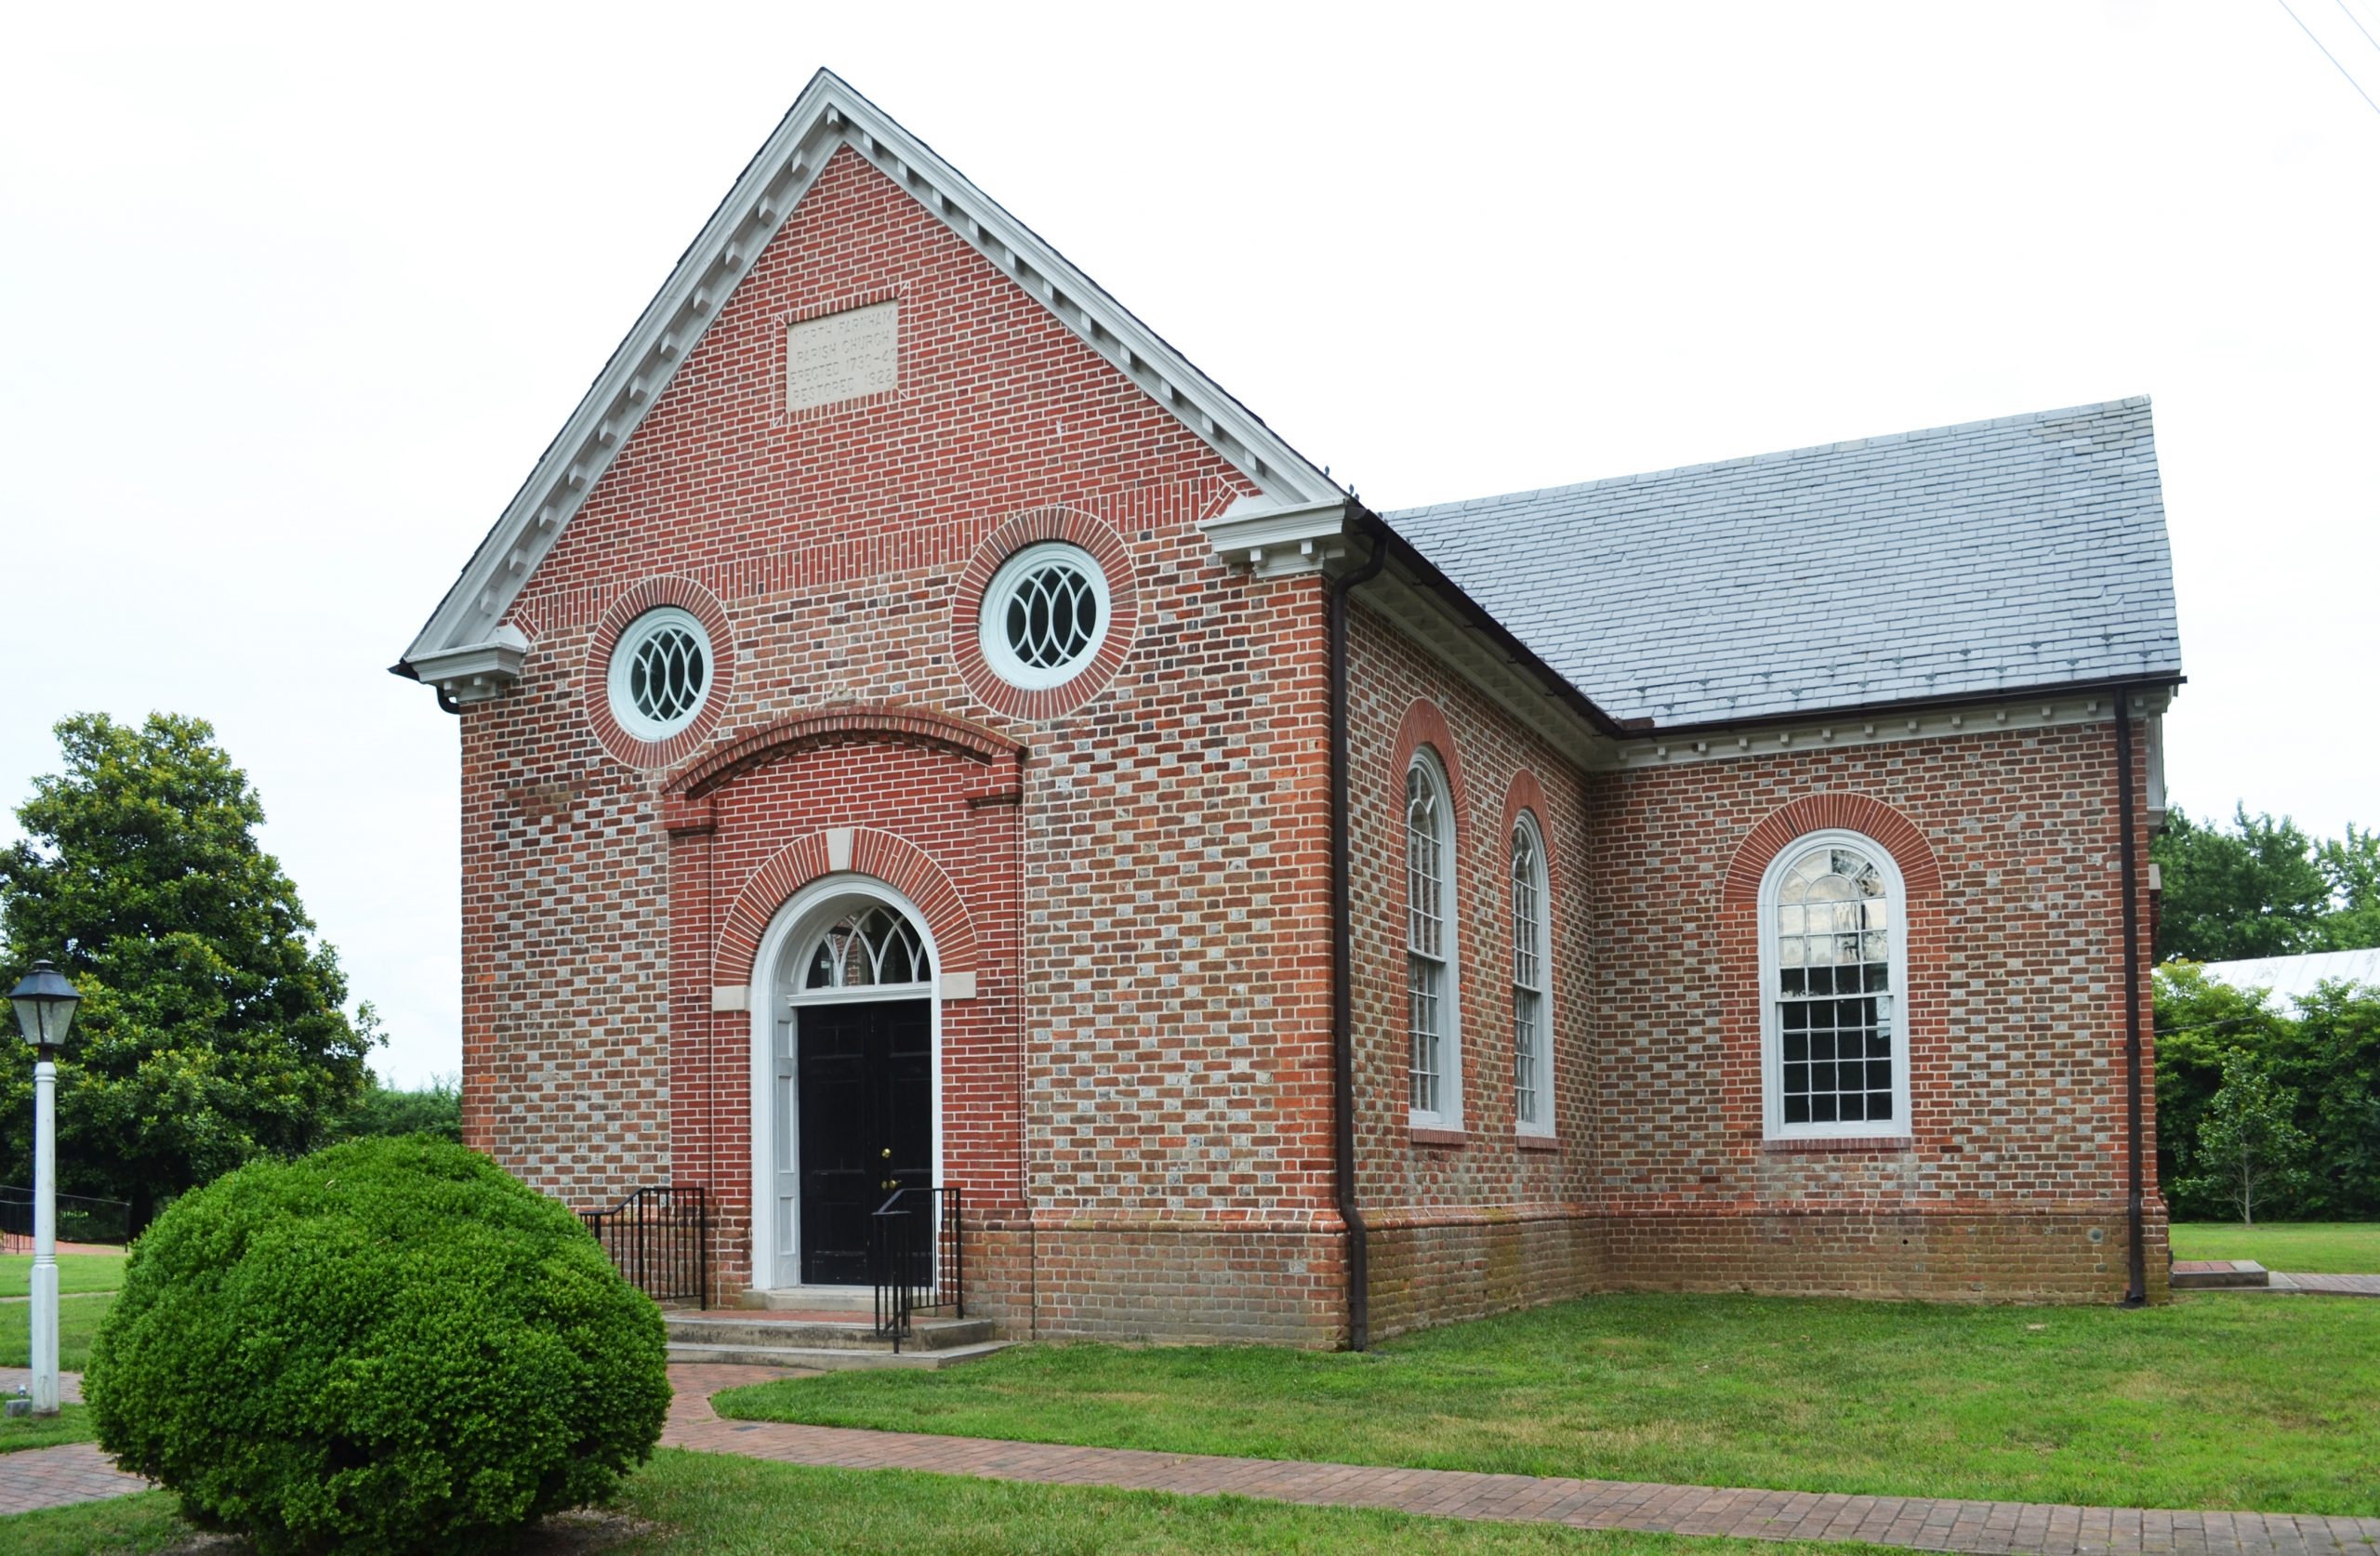 Farnham Church